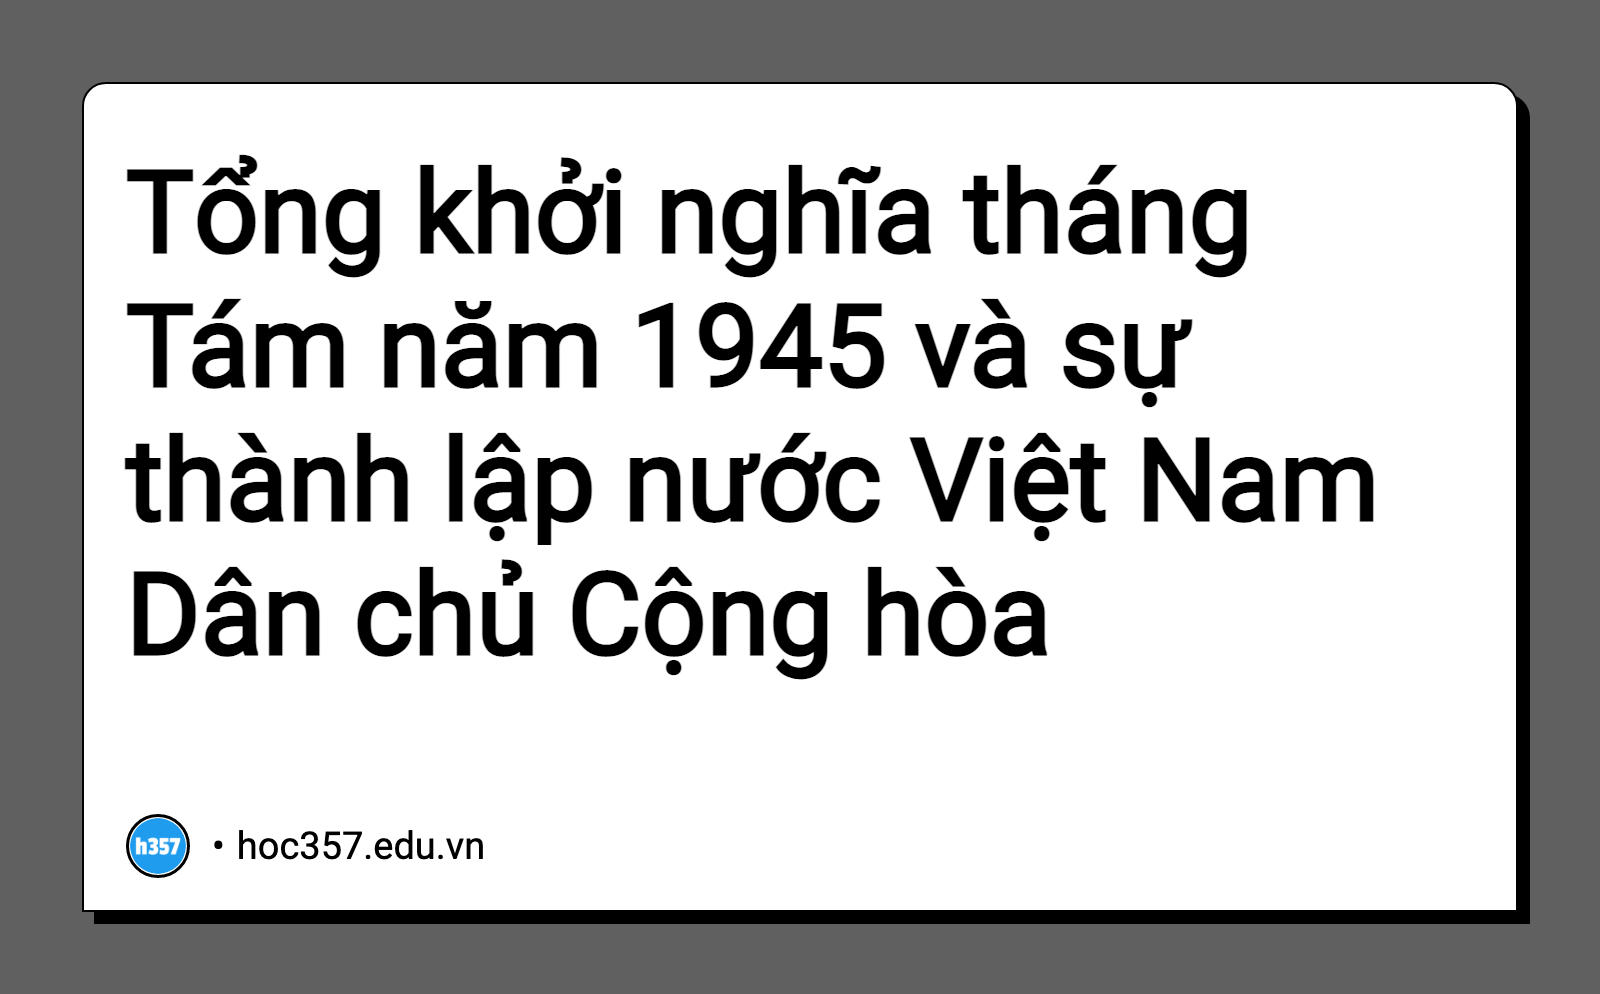 Hình minh họa Tổng khởi nghĩa tháng Tám năm 1945 và sự thành lập nước Việt Nam Dân chủ Cộng hòa